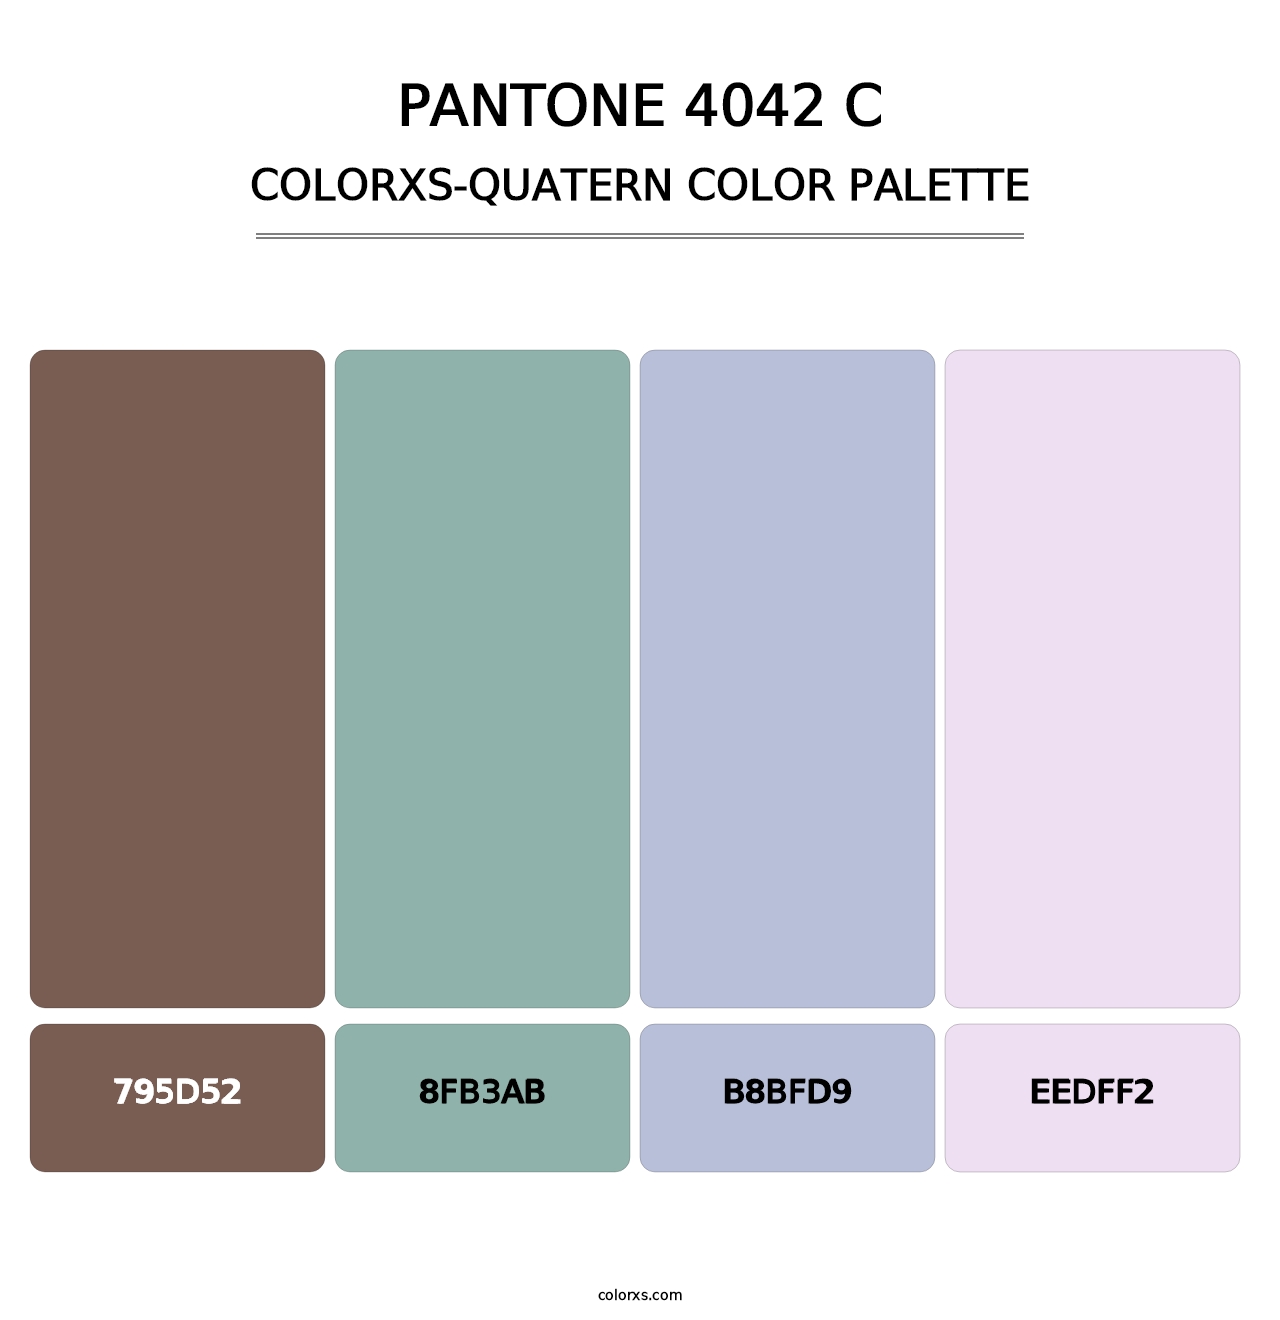 PANTONE 4042 C - Colorxs Quatern Palette